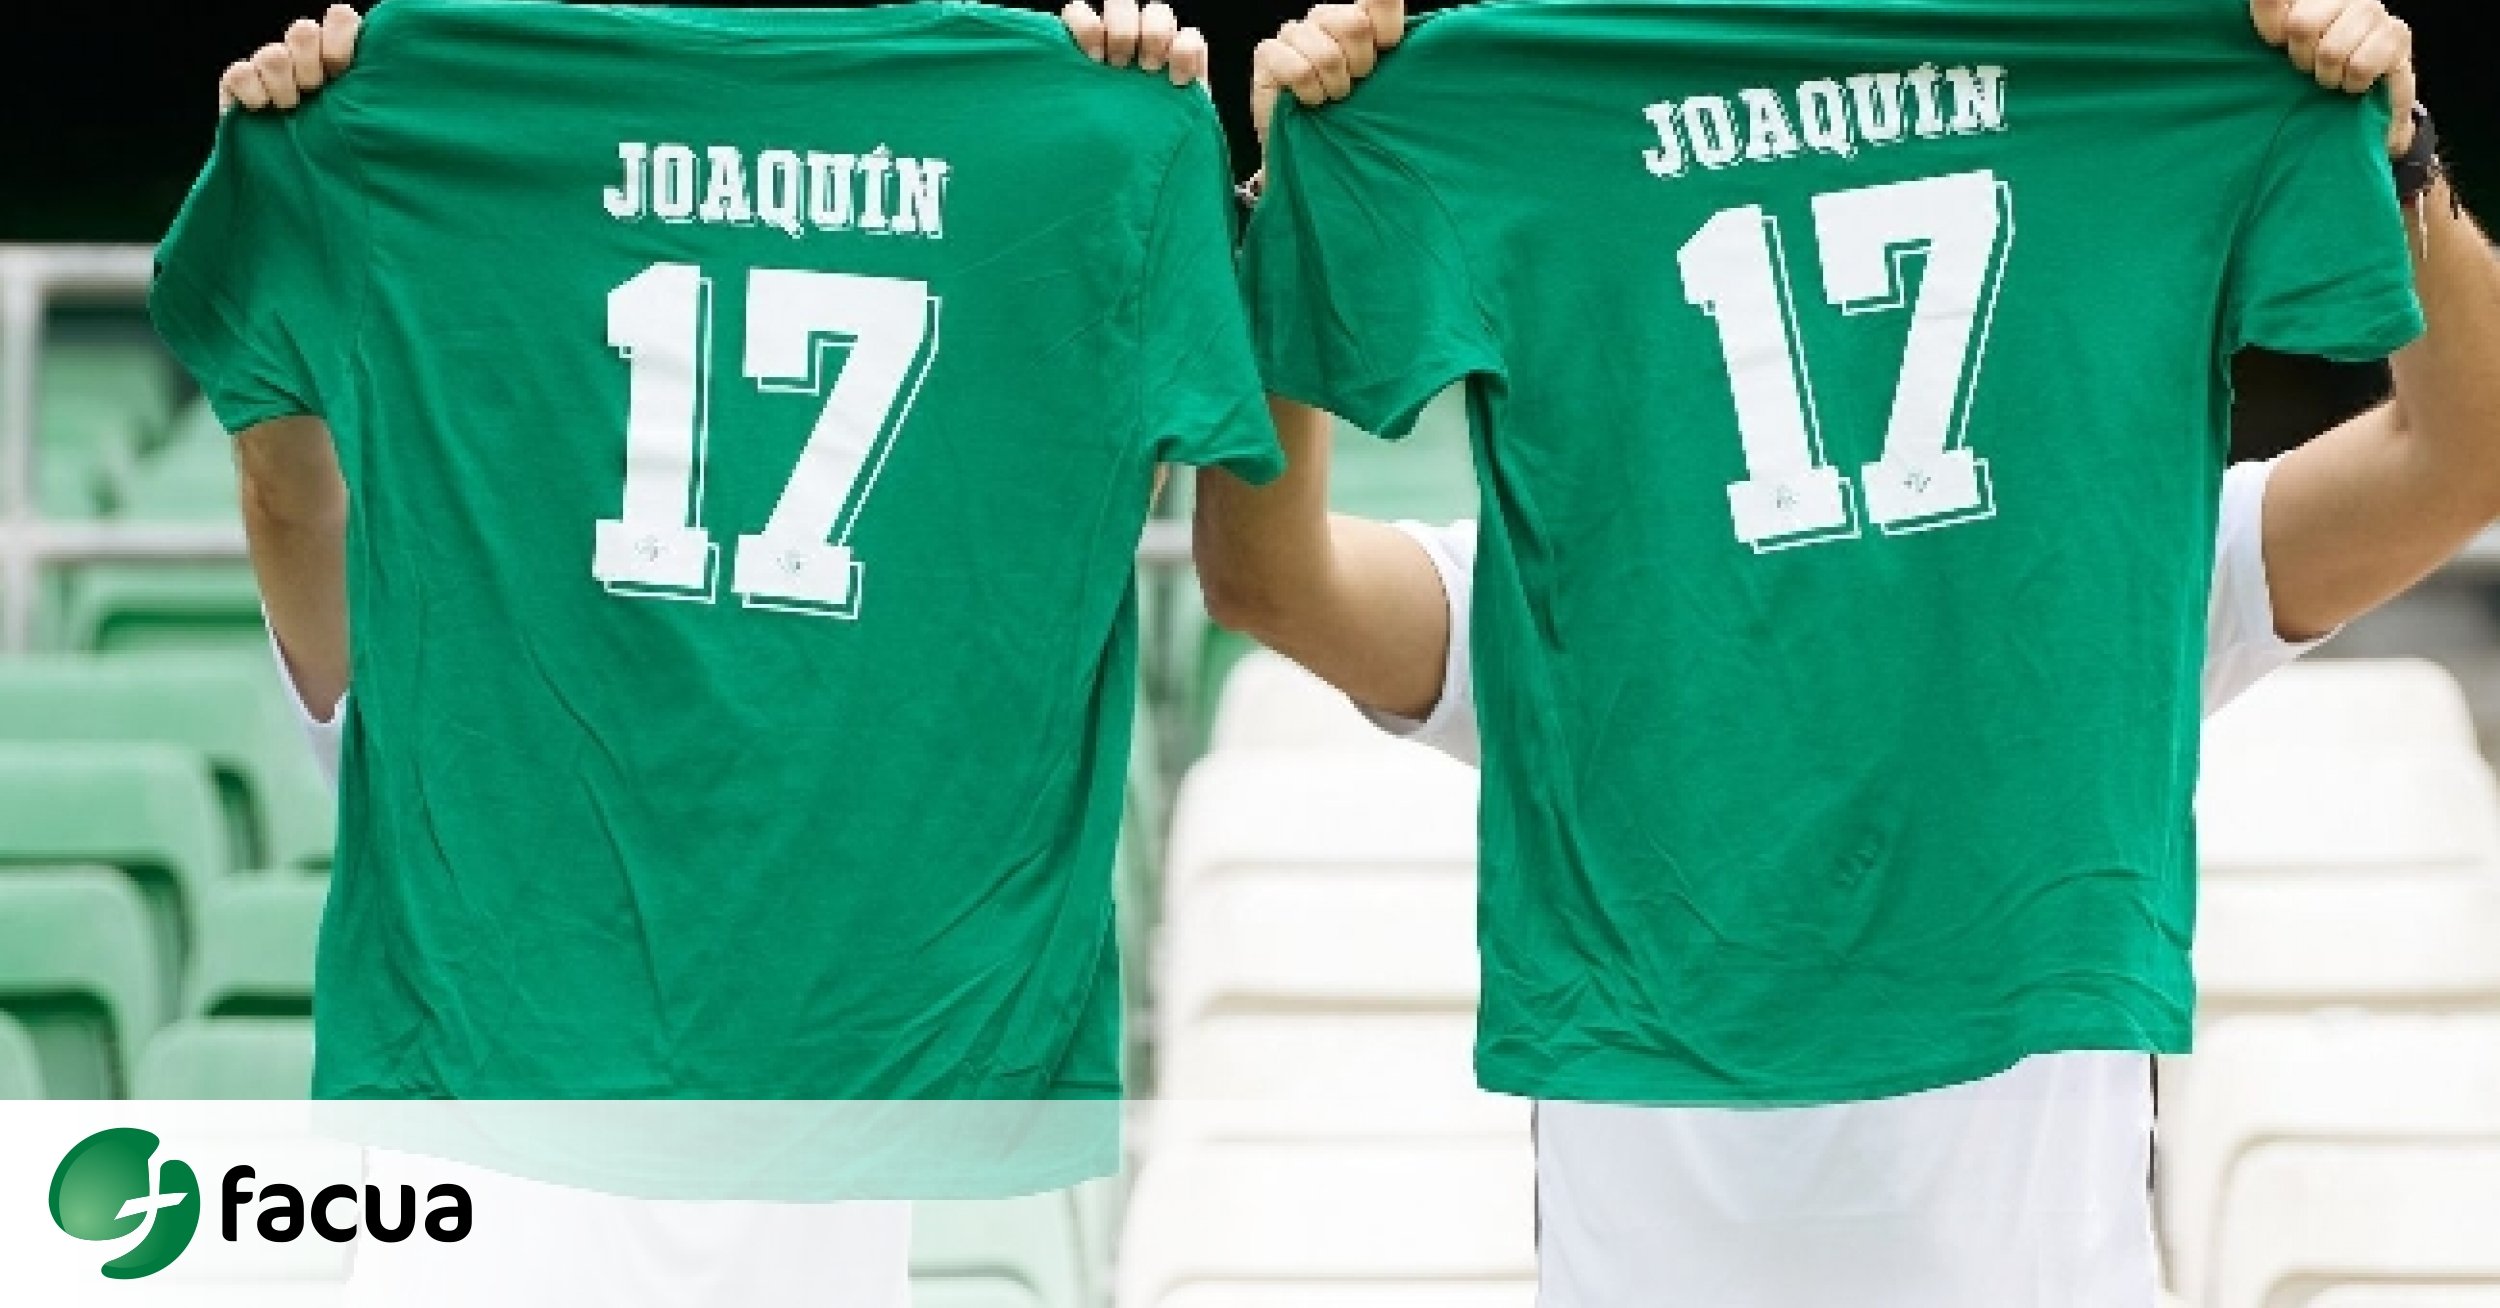 FACUA Sevilla insta al Betis a entregar la camiseta homenaje a Joaquín los asistentes al